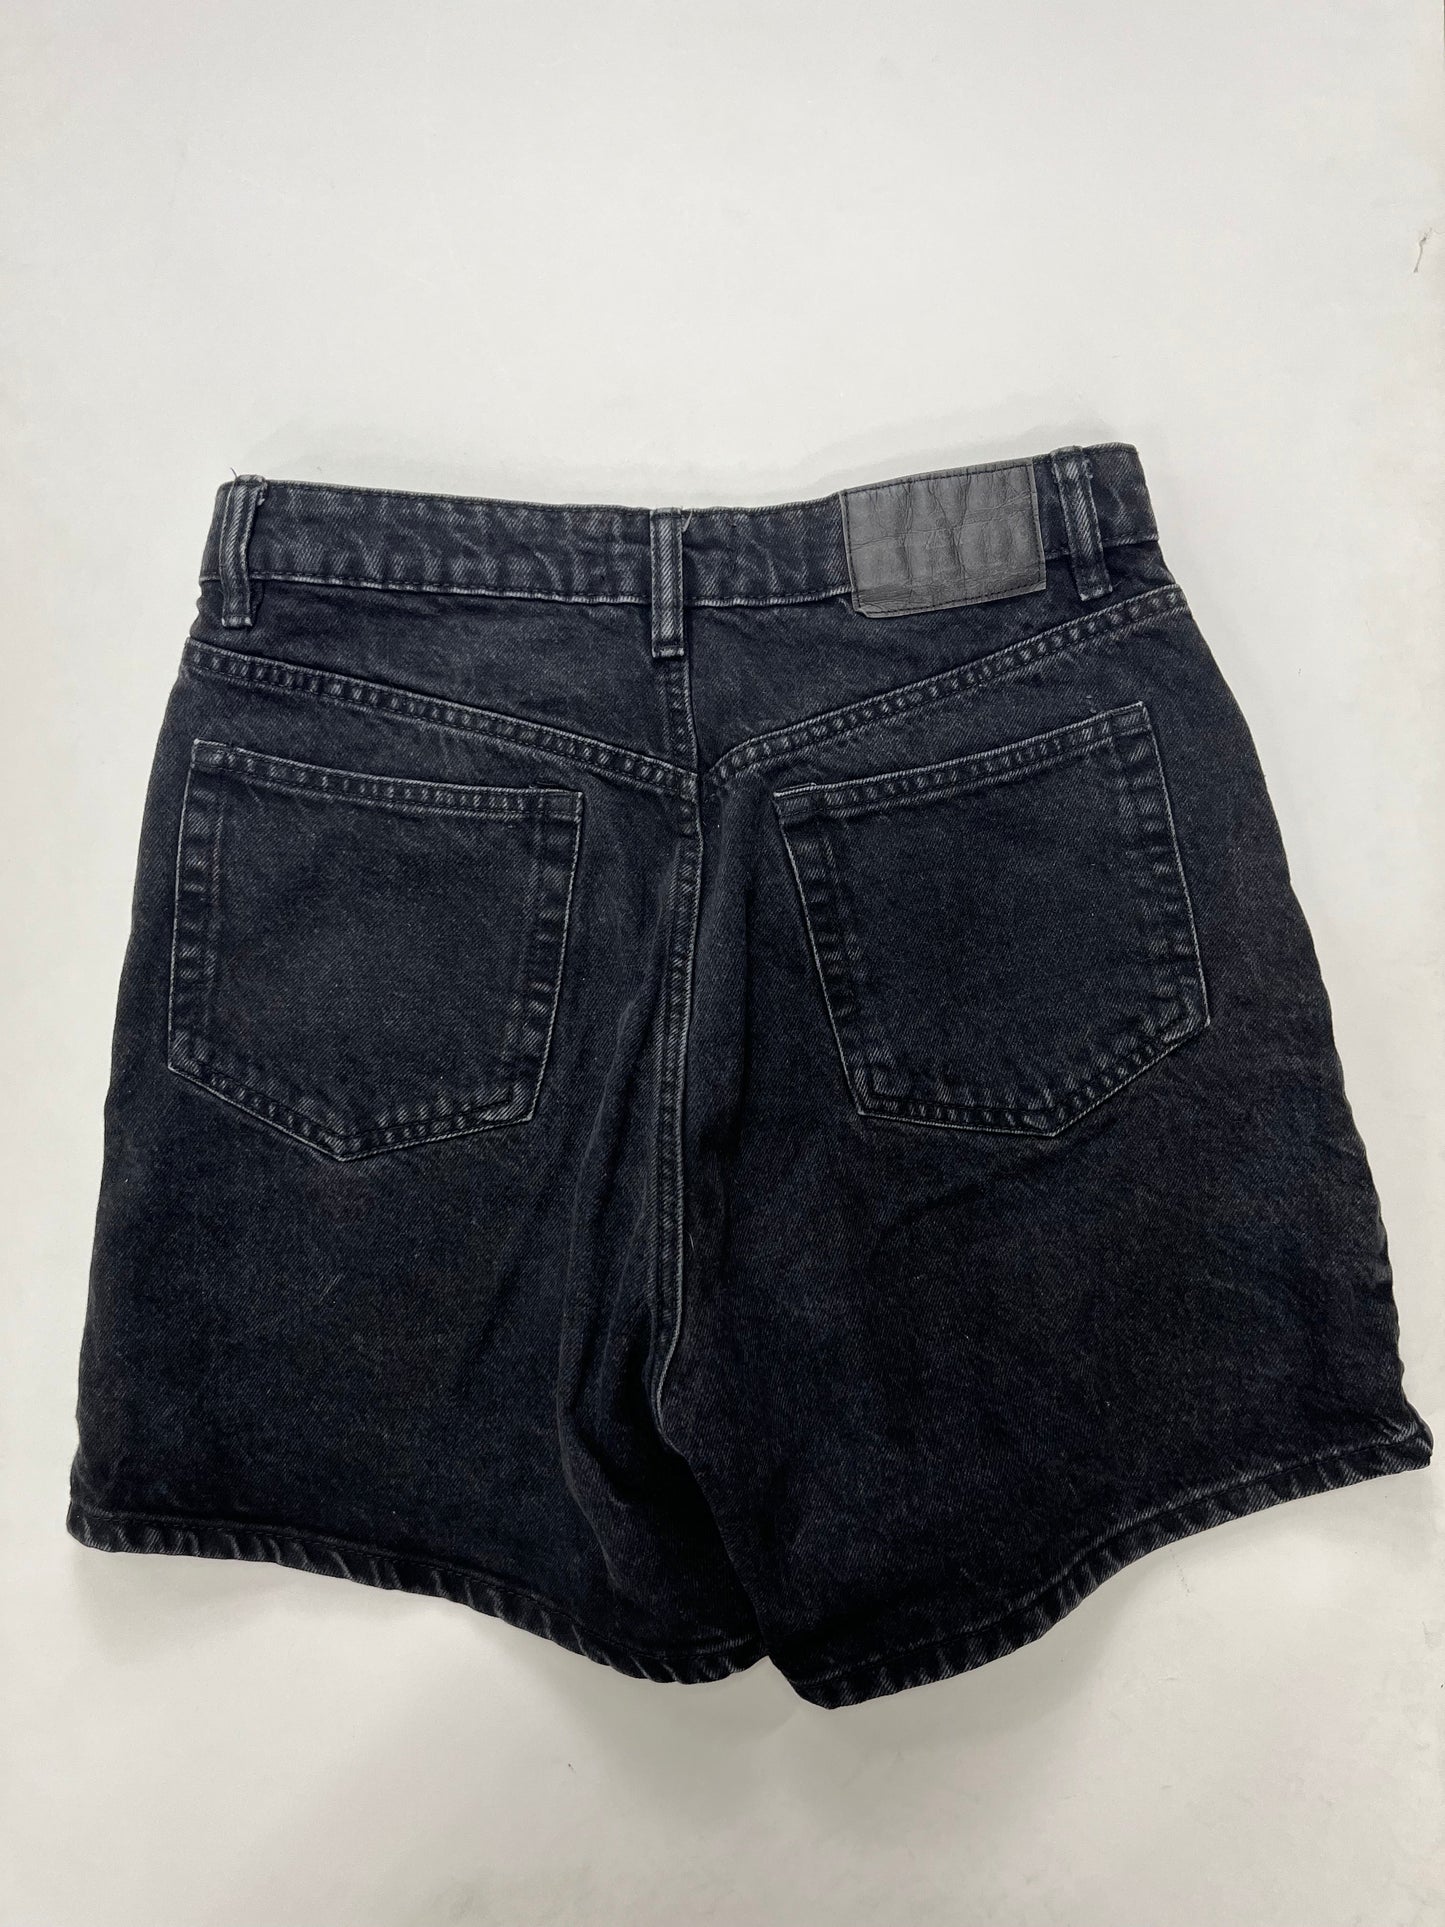 Black Shorts Zara, Size 8